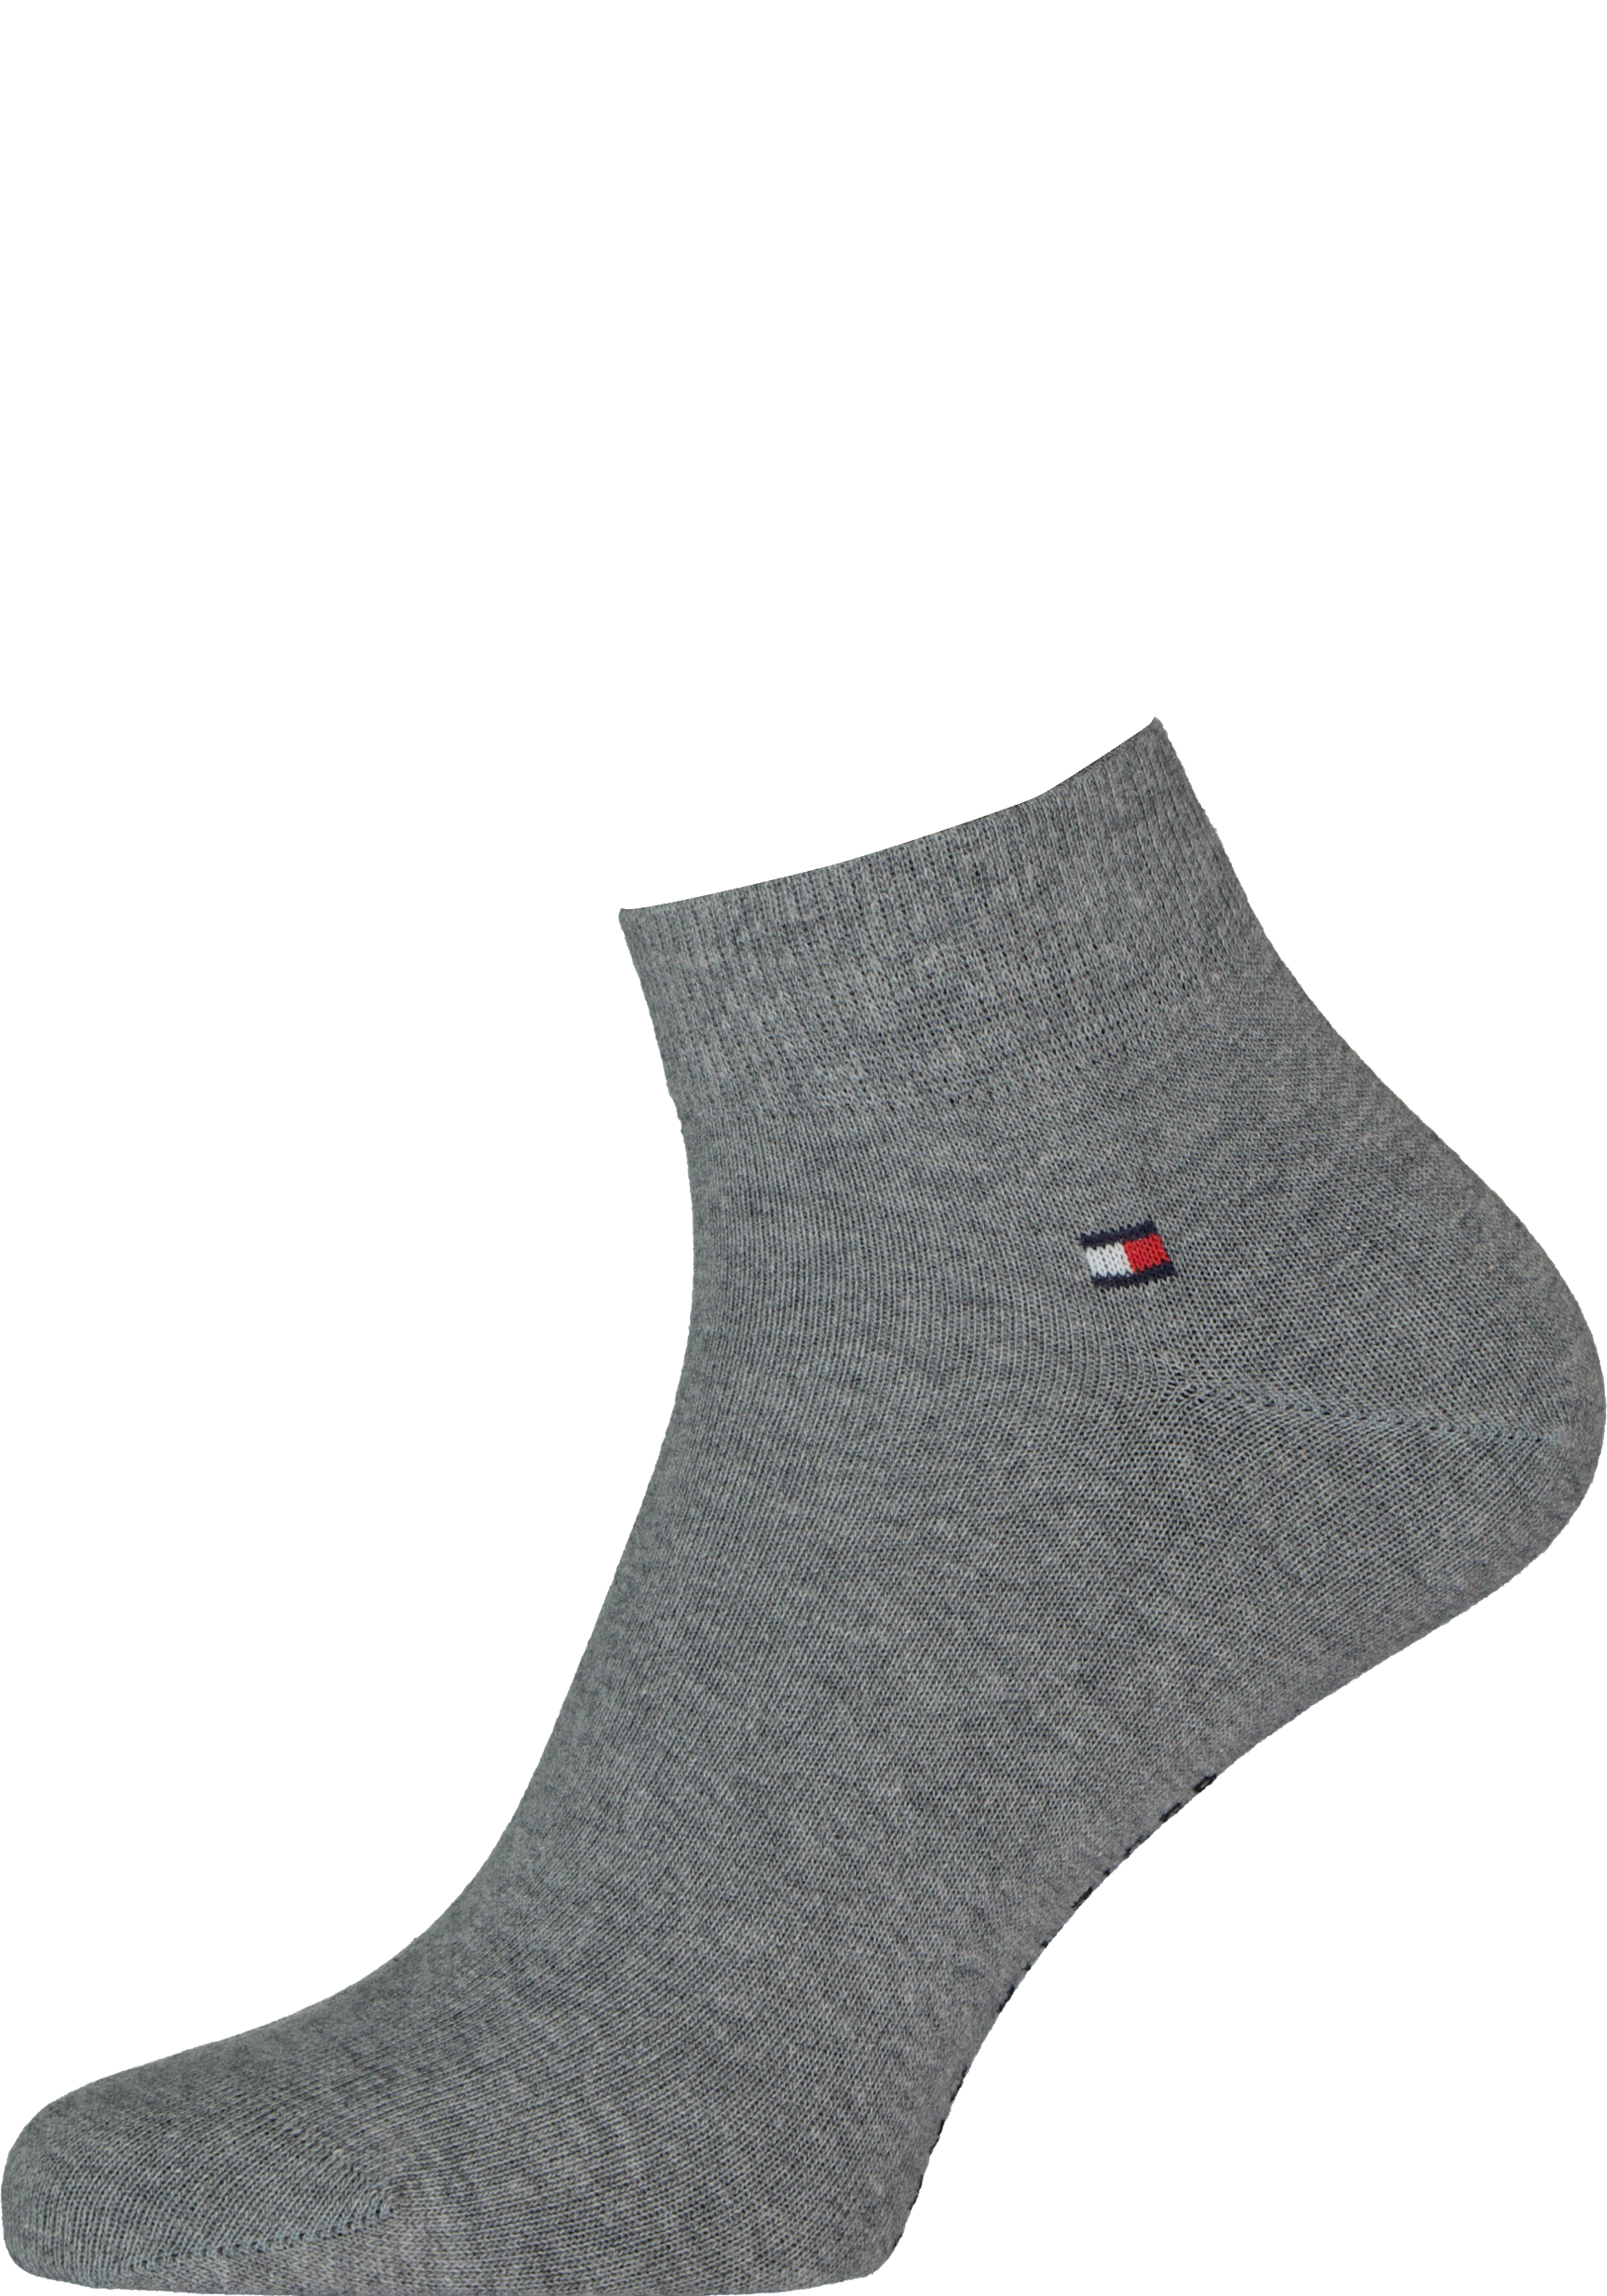 Meetbaar hier Implicaties Tommy Hilfiger Quarter Socks (2-pack), herensokken katoen kort, grijs -  Shop de nieuwste voorjaarsmode